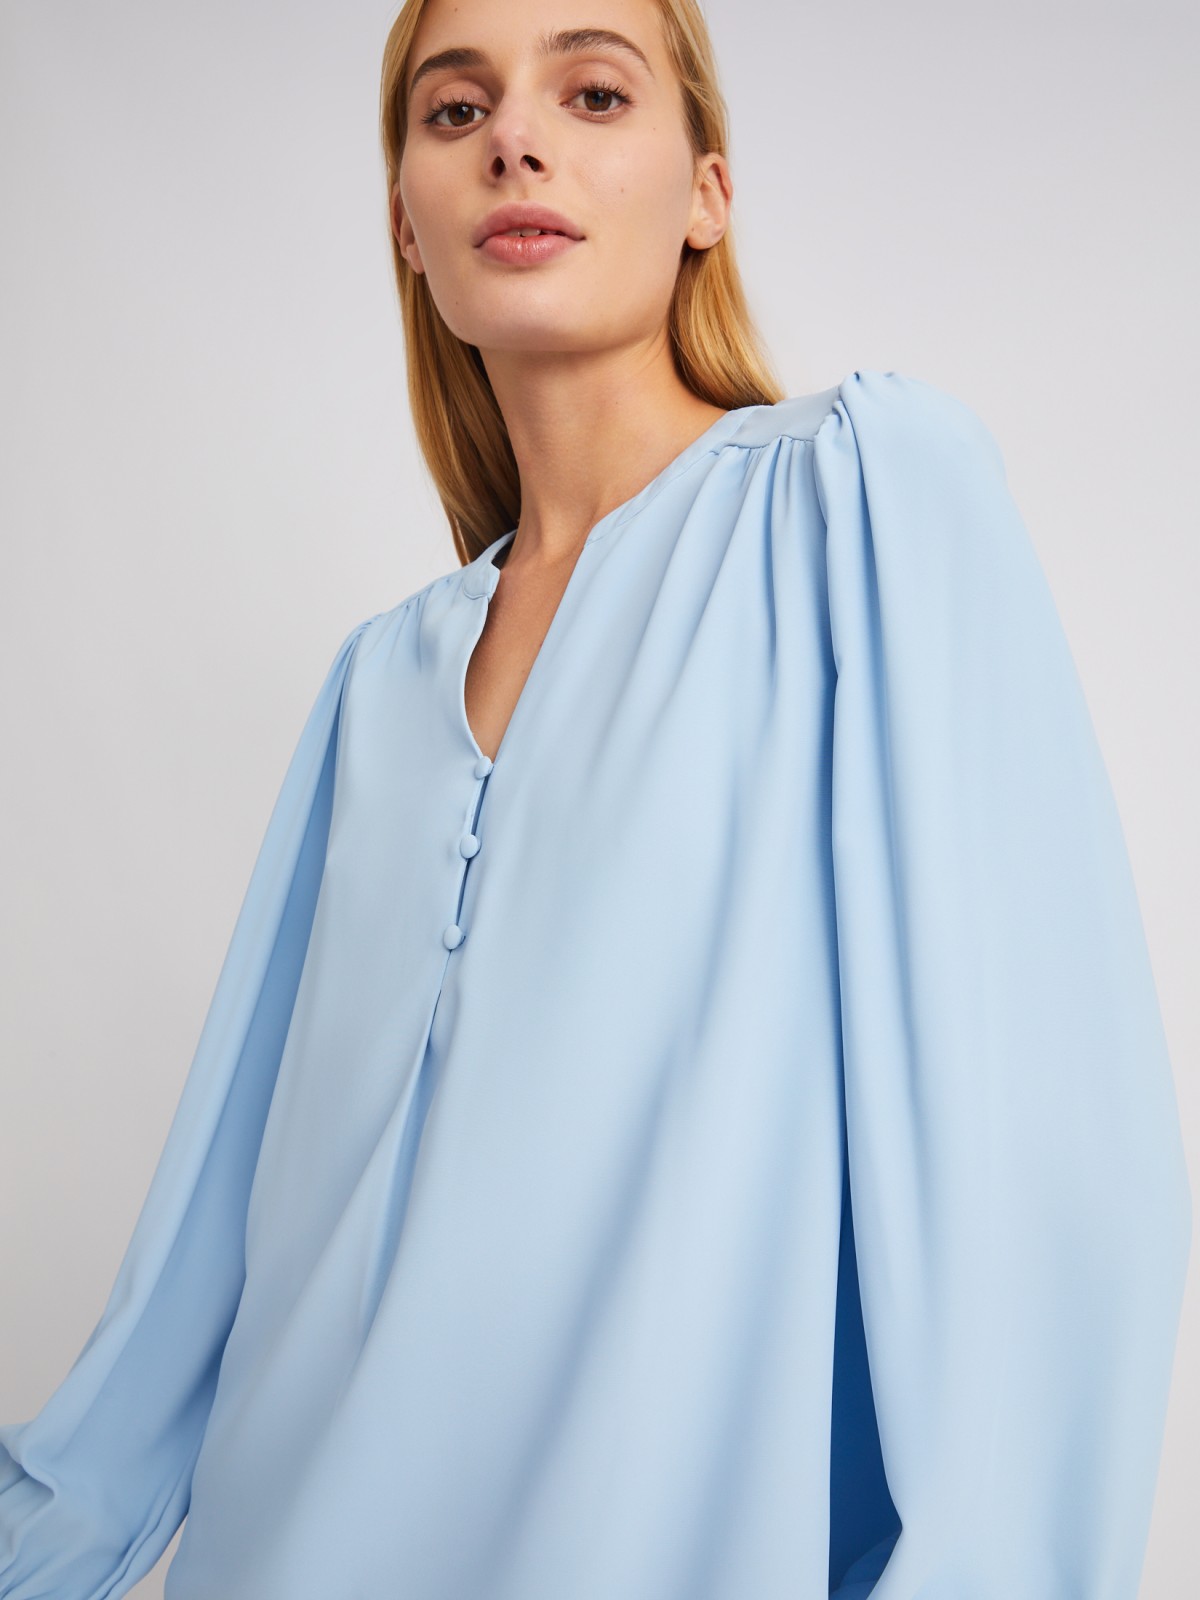 Блузка с объёмными рукавами и V-образным вырезом на груди zolla 024121159122, цвет светло-голубой, размер XS - фото 4